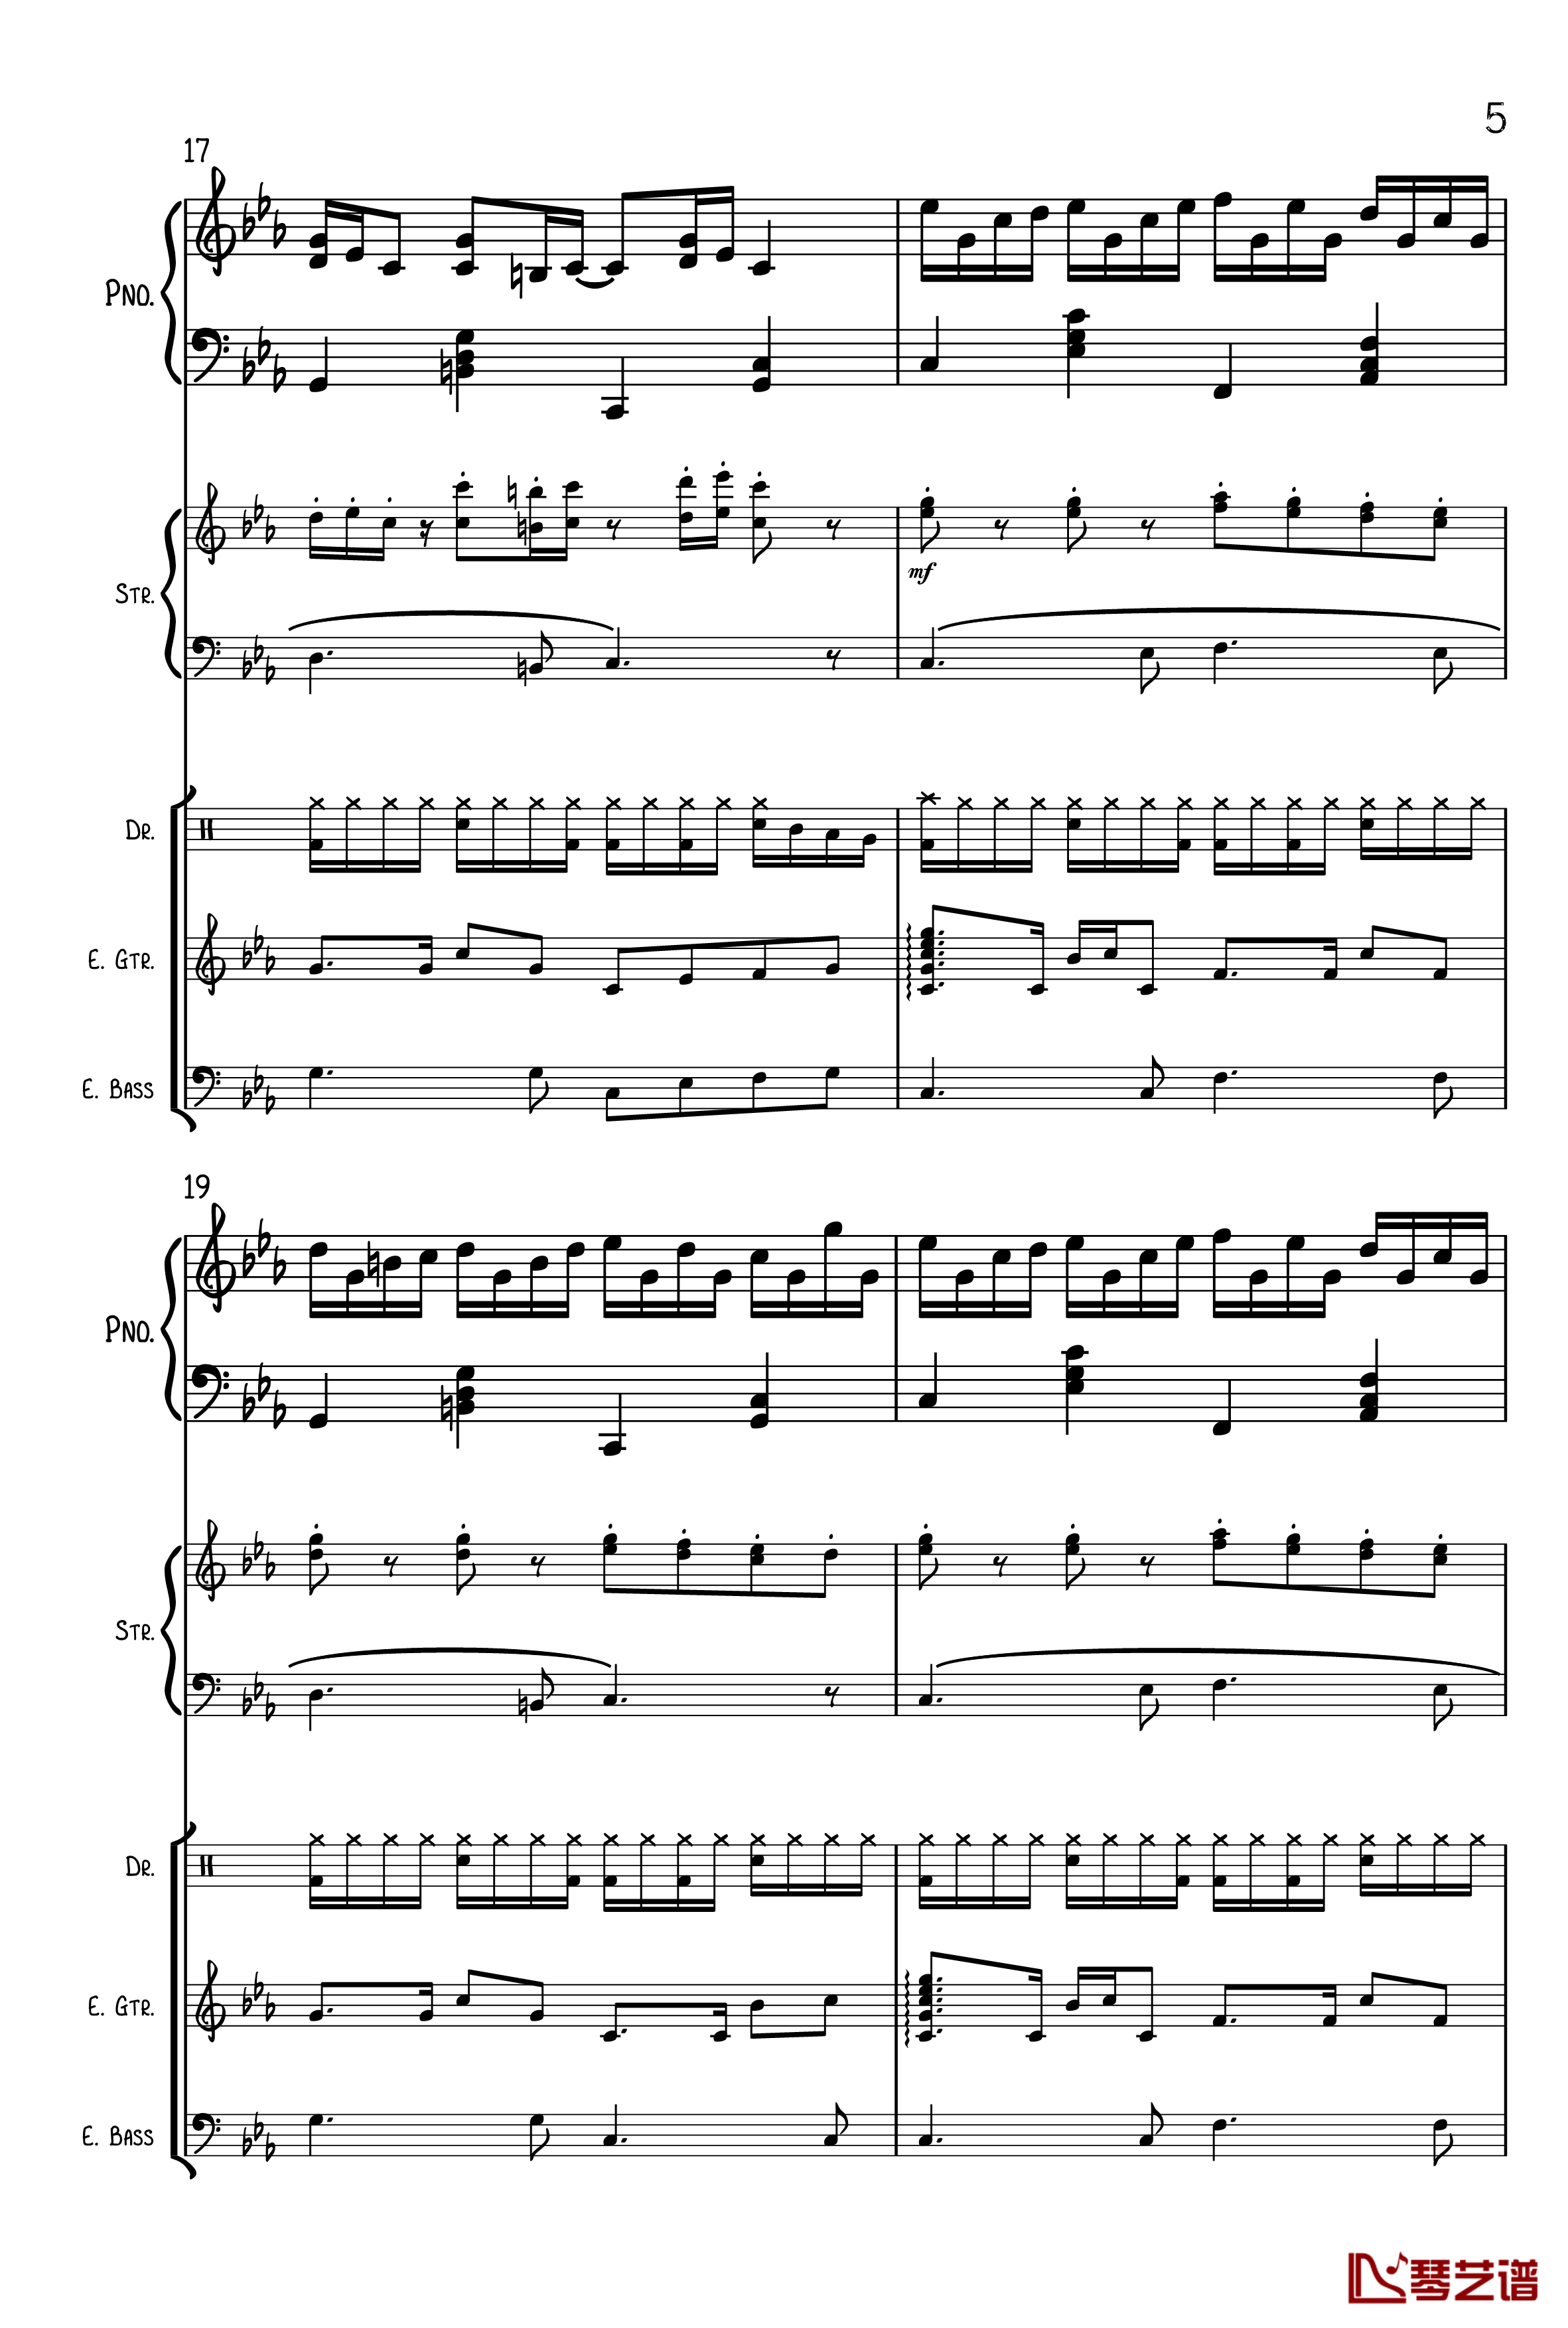 克罗地亚狂想曲钢琴谱-总谱-马克西姆-Maksim·Mrvica5